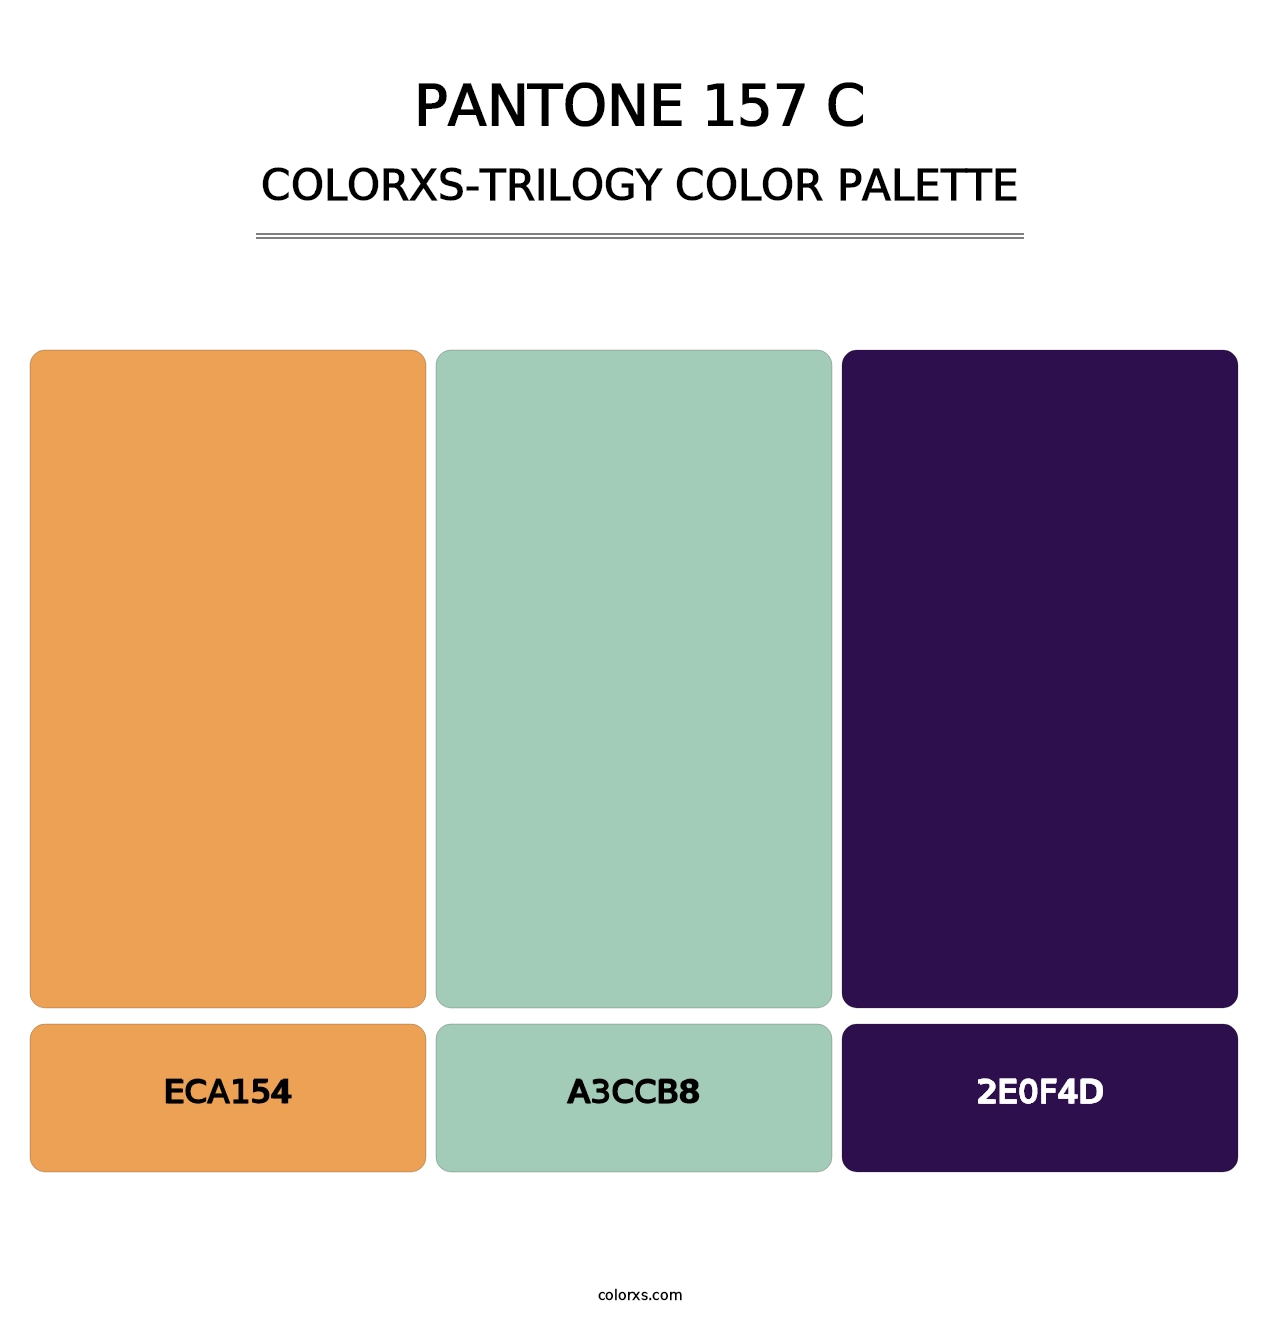 PANTONE 157 C - Colorxs Trilogy Palette